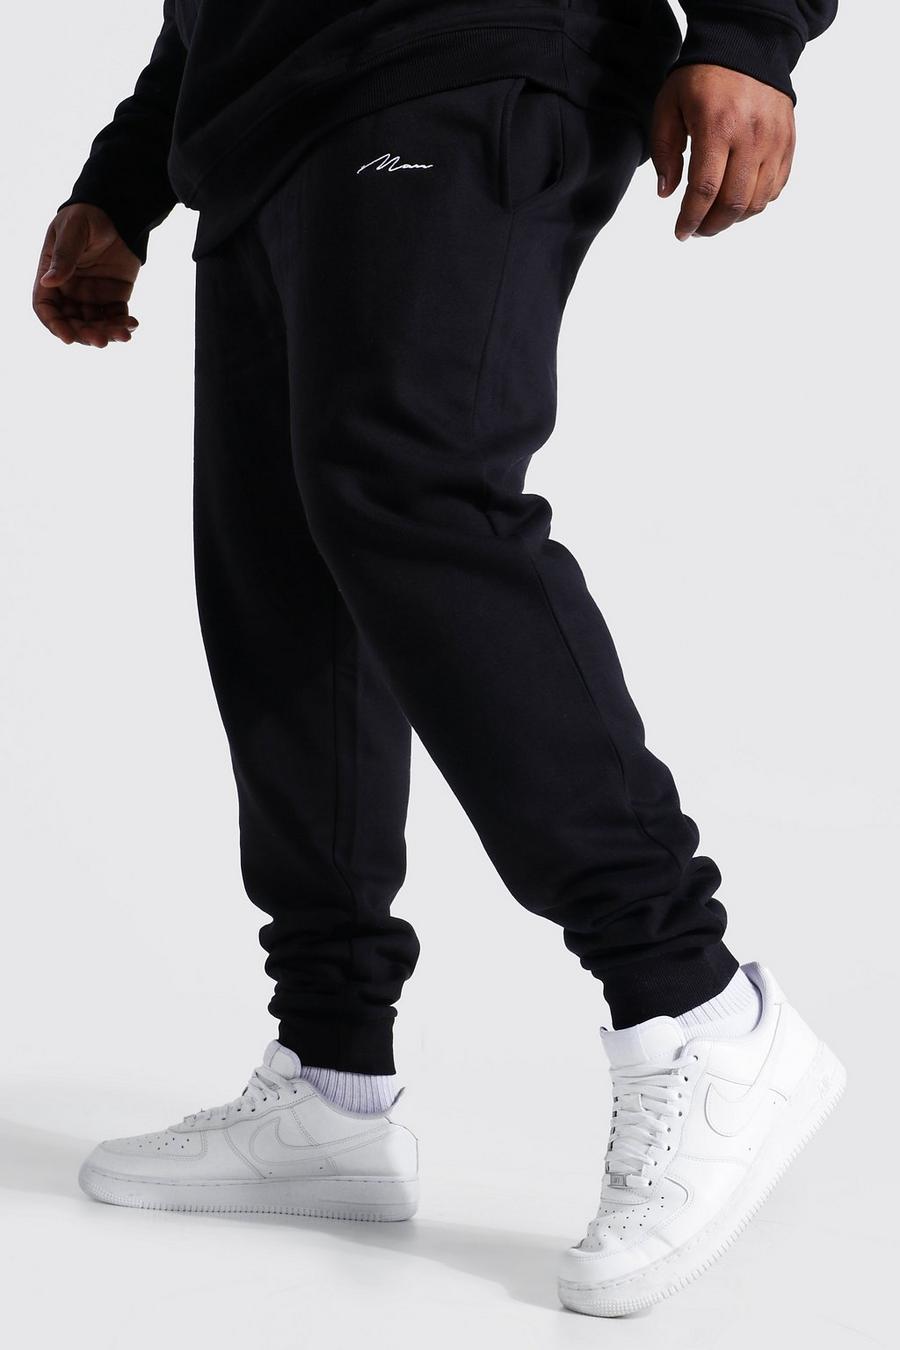 Pantalón deportivo Plus MAN pitillo de materiales reciclados, Black negro